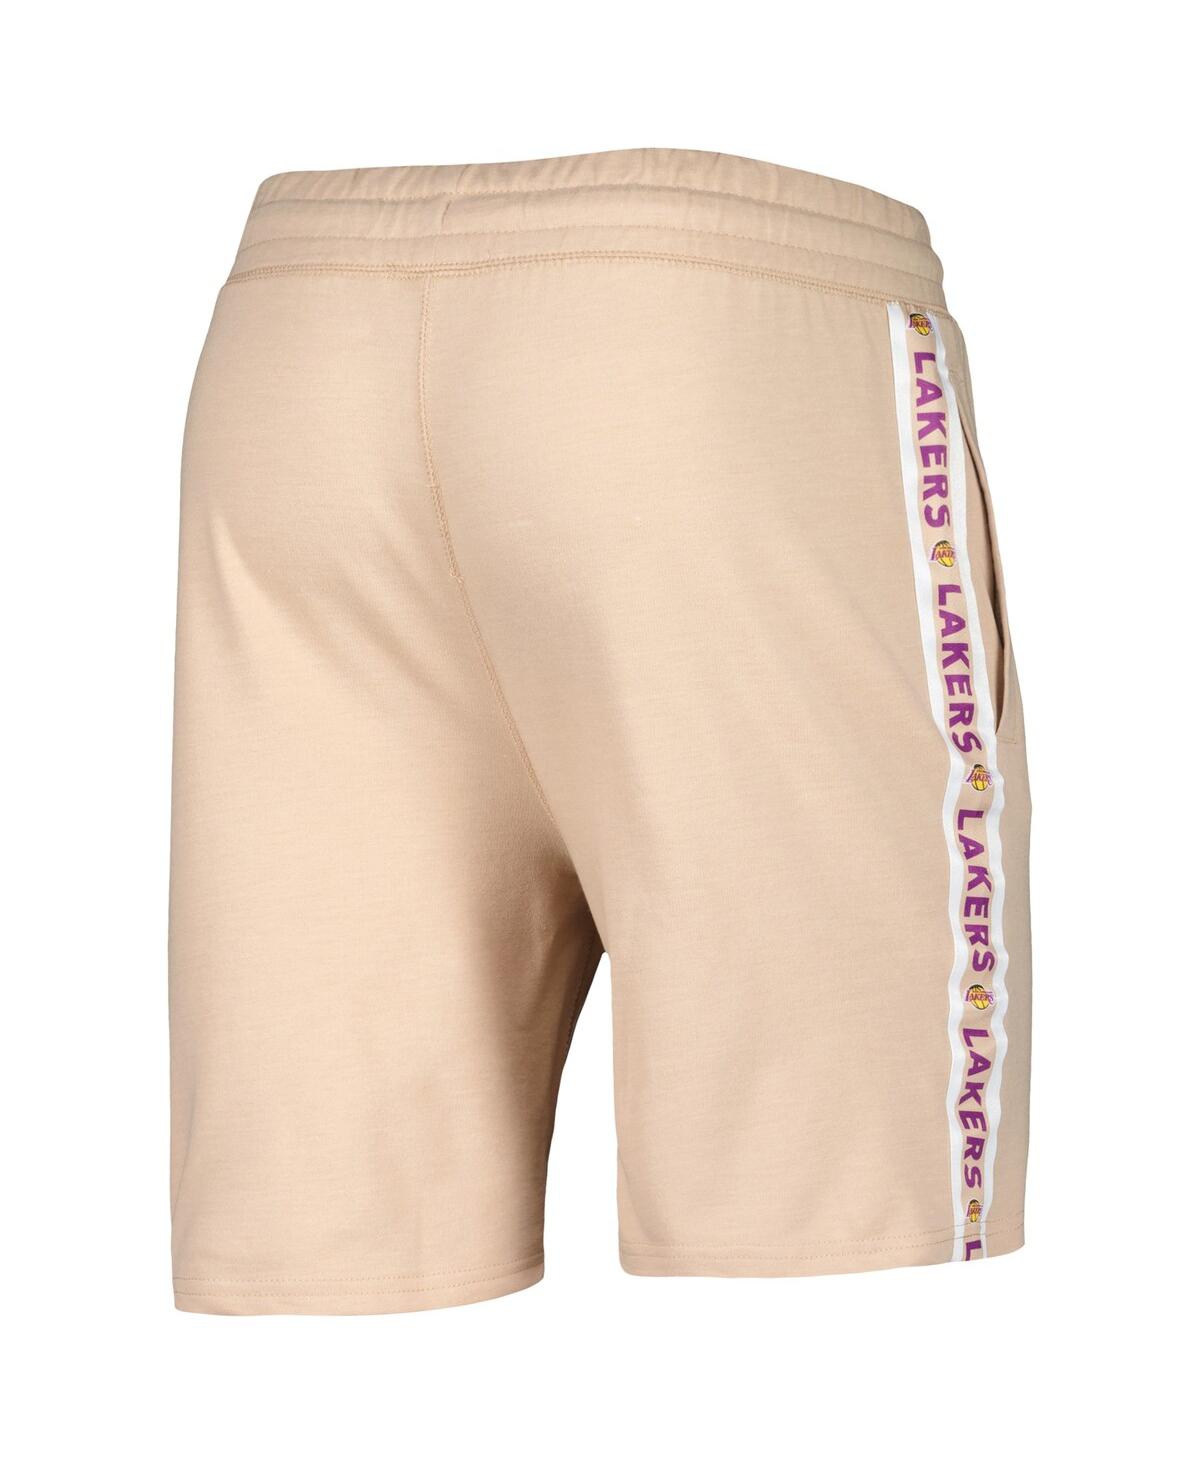 Shop Concepts Sport Men's  Tan Los Angeles Lakers Team Stripe Shorts